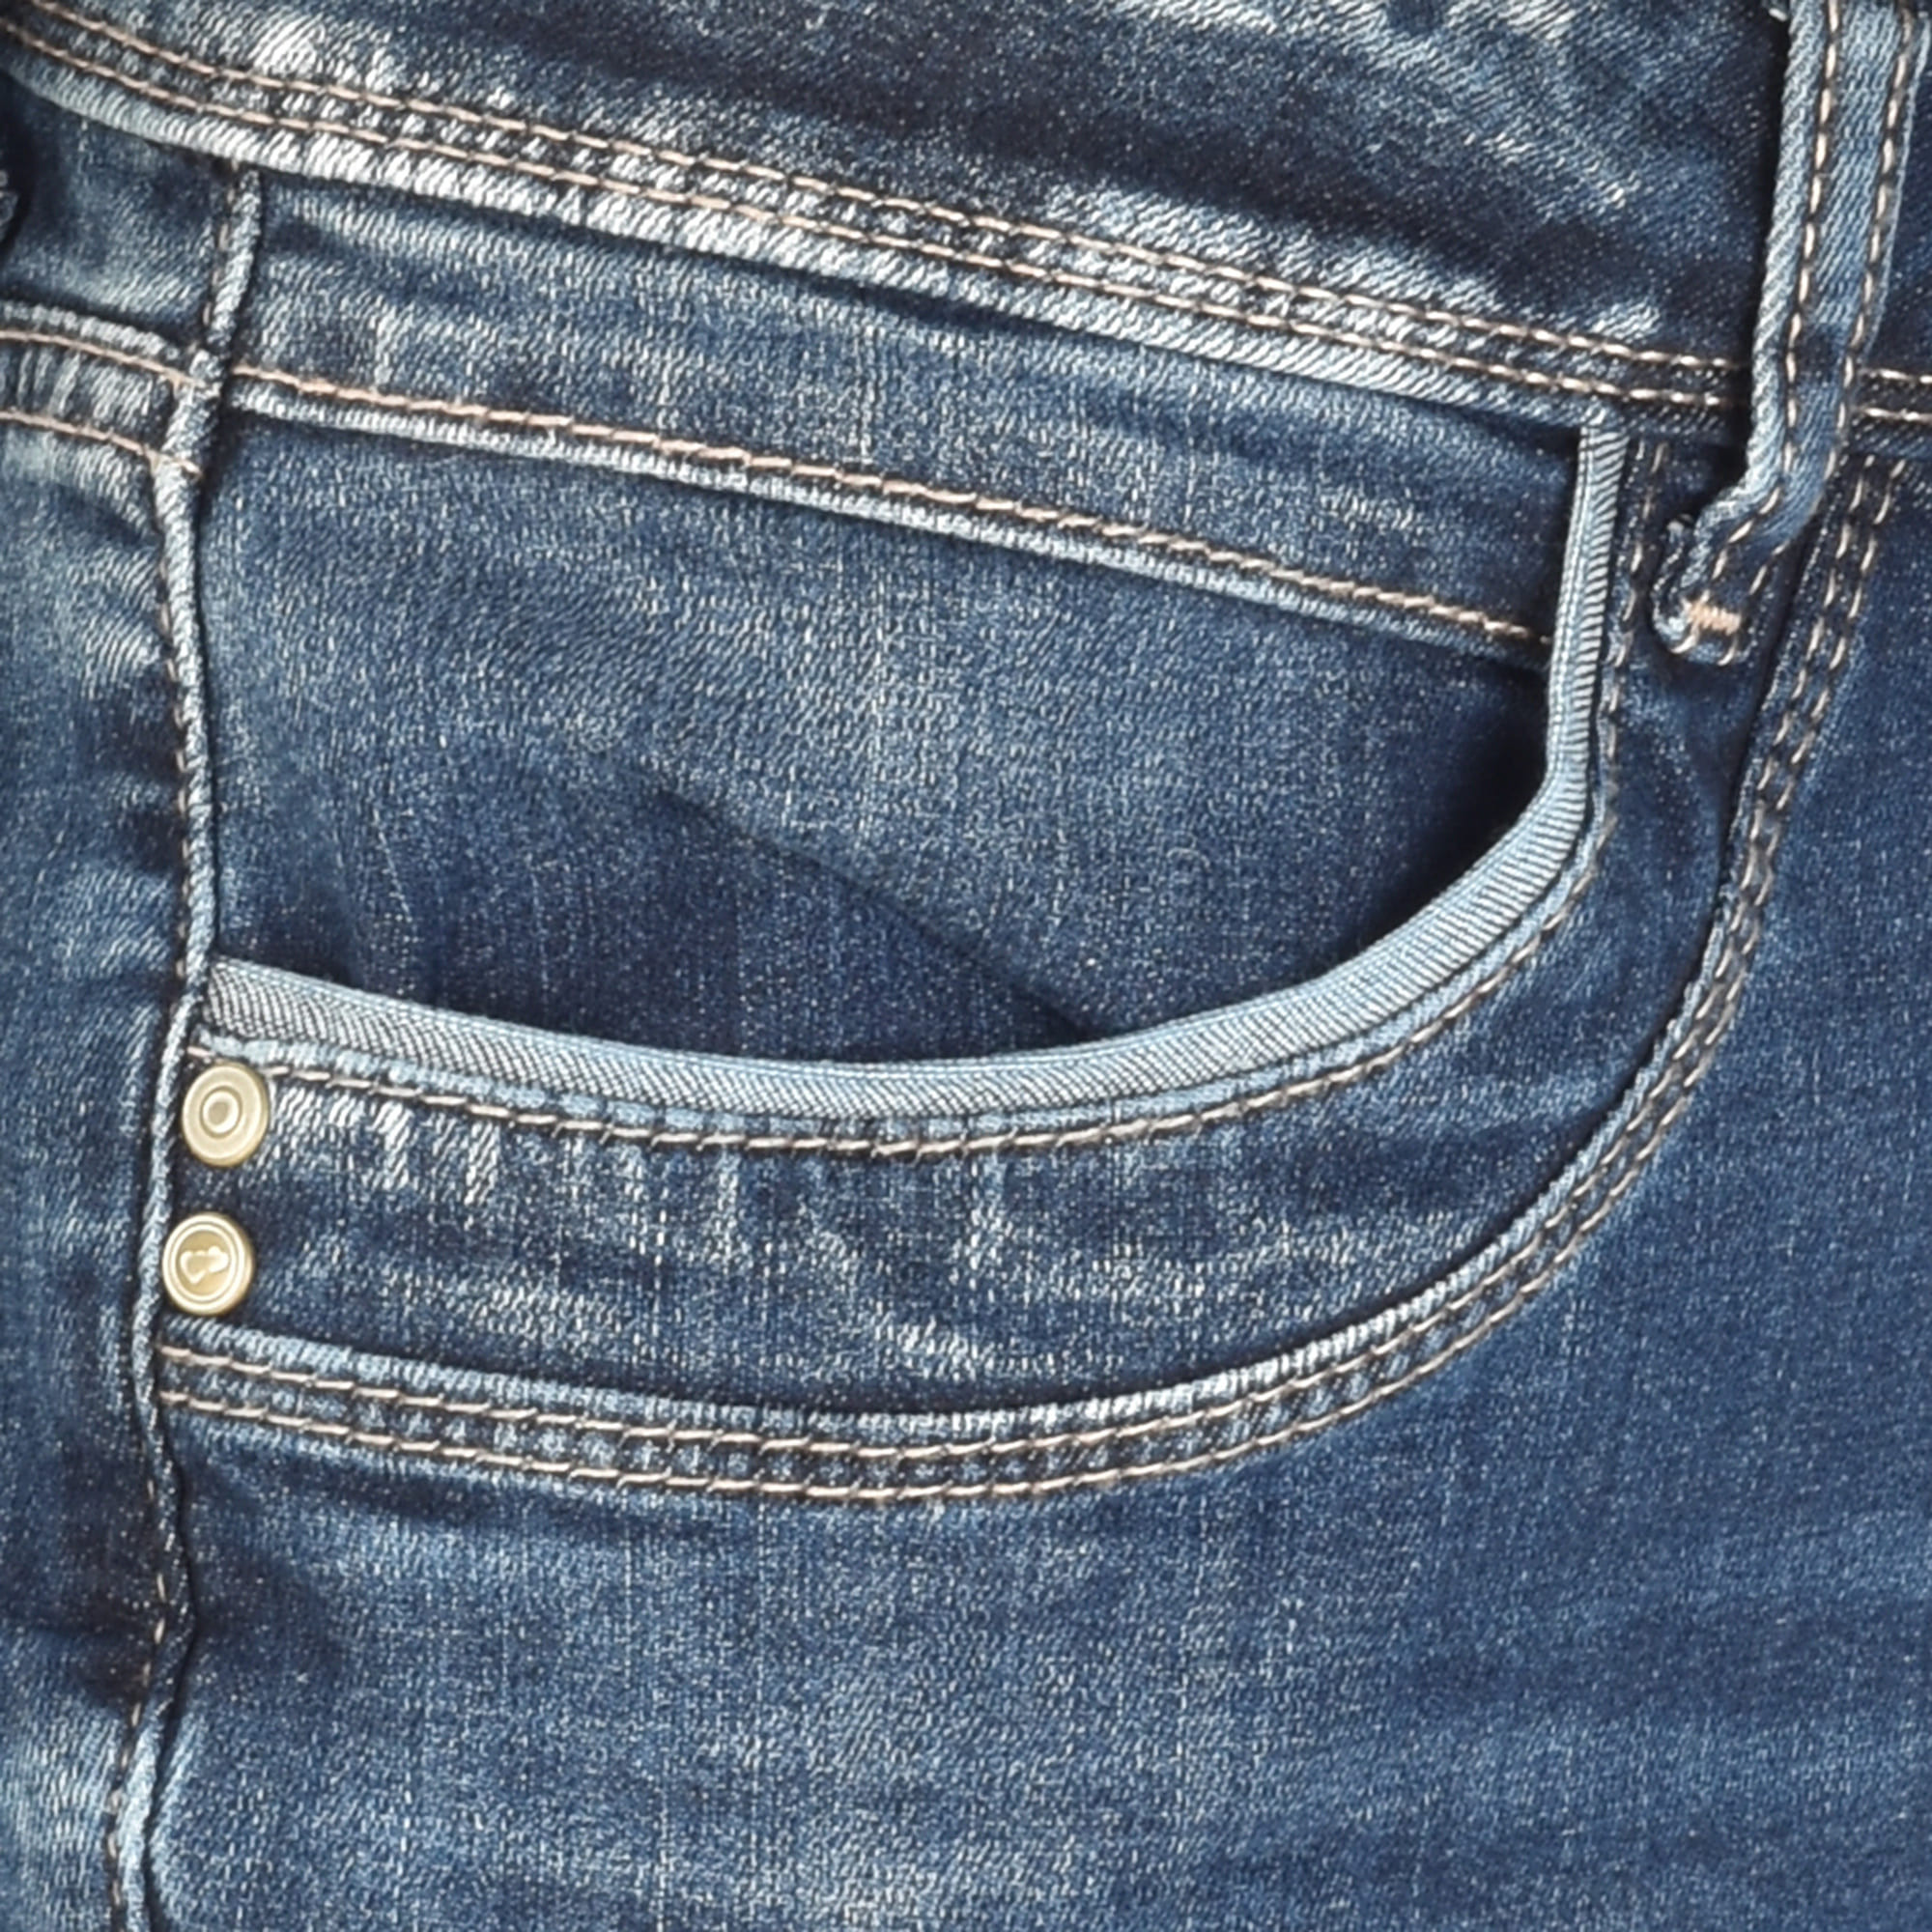 Jeans - Slim Fit - Mein bei Shop Fischer - York kaufen im online meinfischer.de